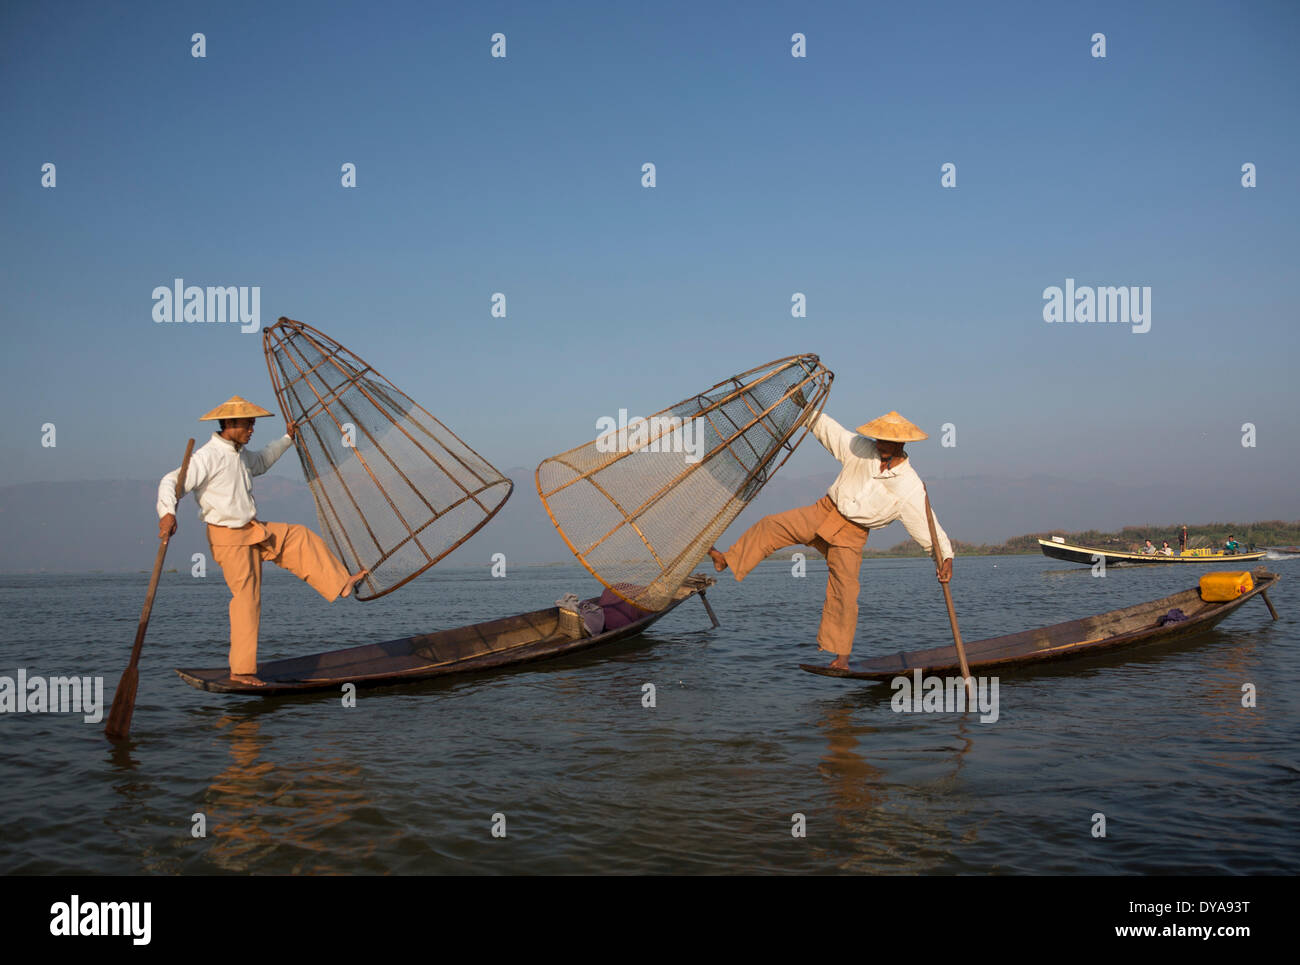 El Inle Myanmar Birmania Asia Nyaungshwe Ciudad coloridos barcos de pescadores temprano por la mañana el lago de pesca tradicional de viajes turísticos Foto de stock